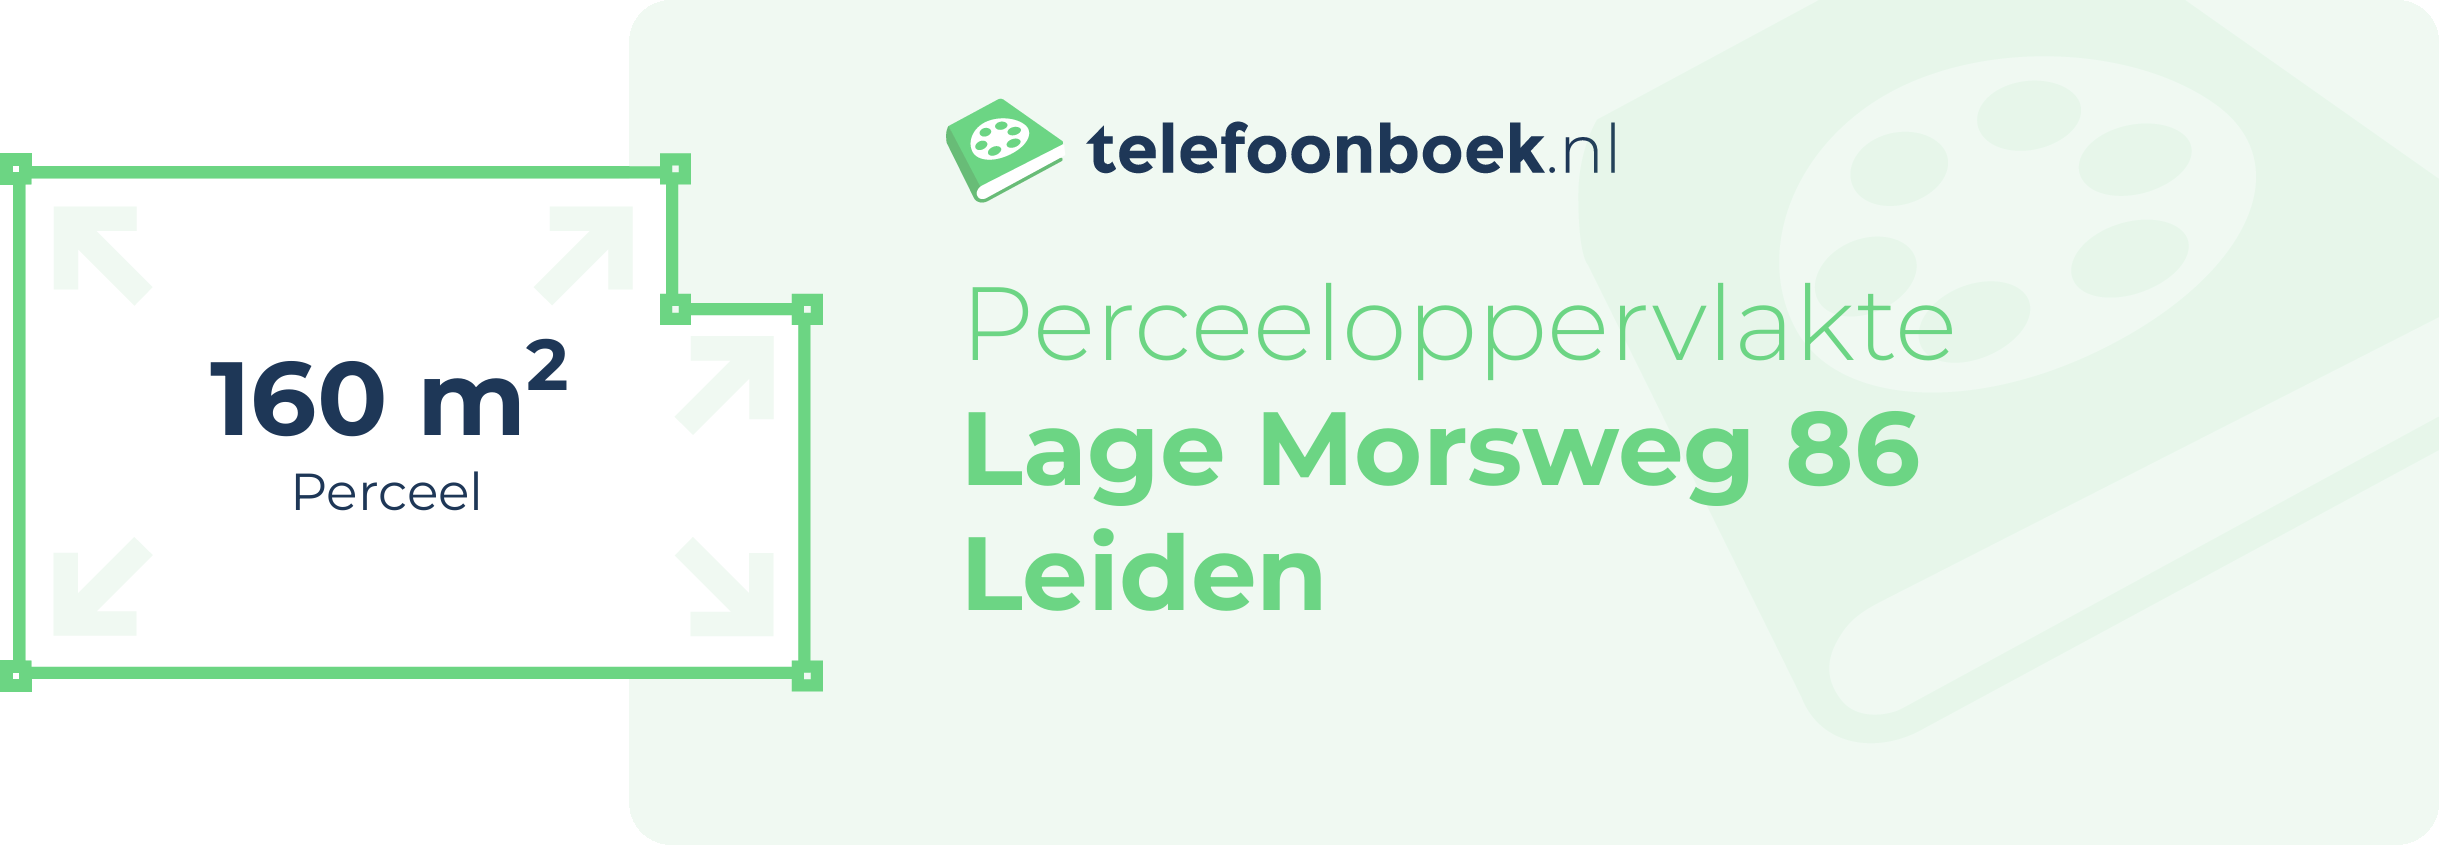 Perceeloppervlakte Lage Morsweg 86 Leiden